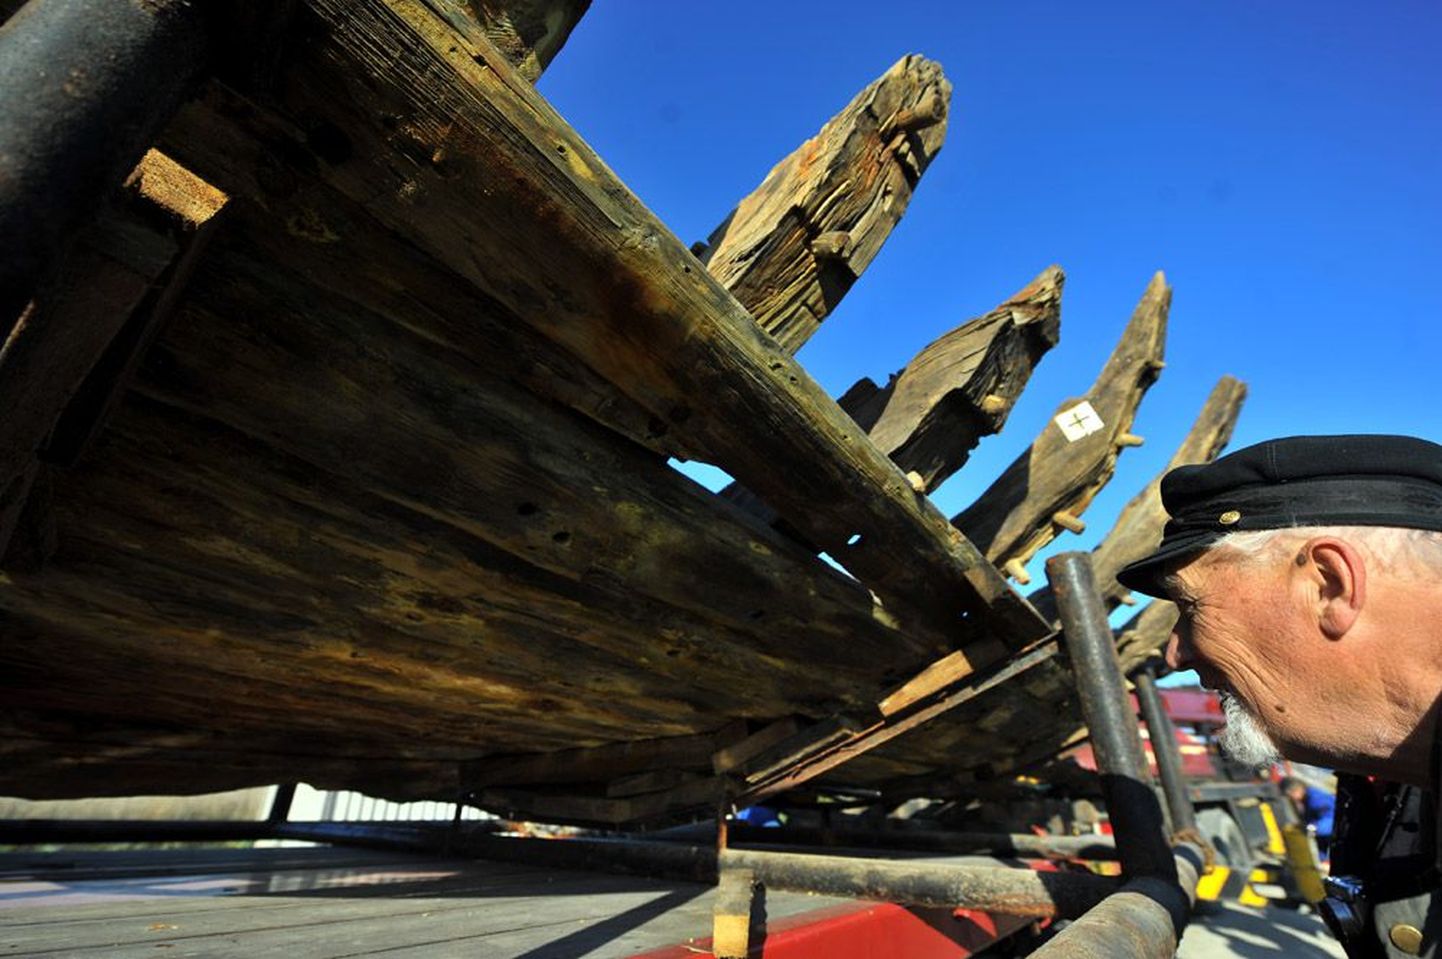 25 aastat tagasi Maasilinna laeva avastamise ekspeditsiooni juhtinud ajaloolane Bruno Pao uurib, kuidas Saaremaa laevameistrid pool aastatuhandet tagasi laeva ehitasid.